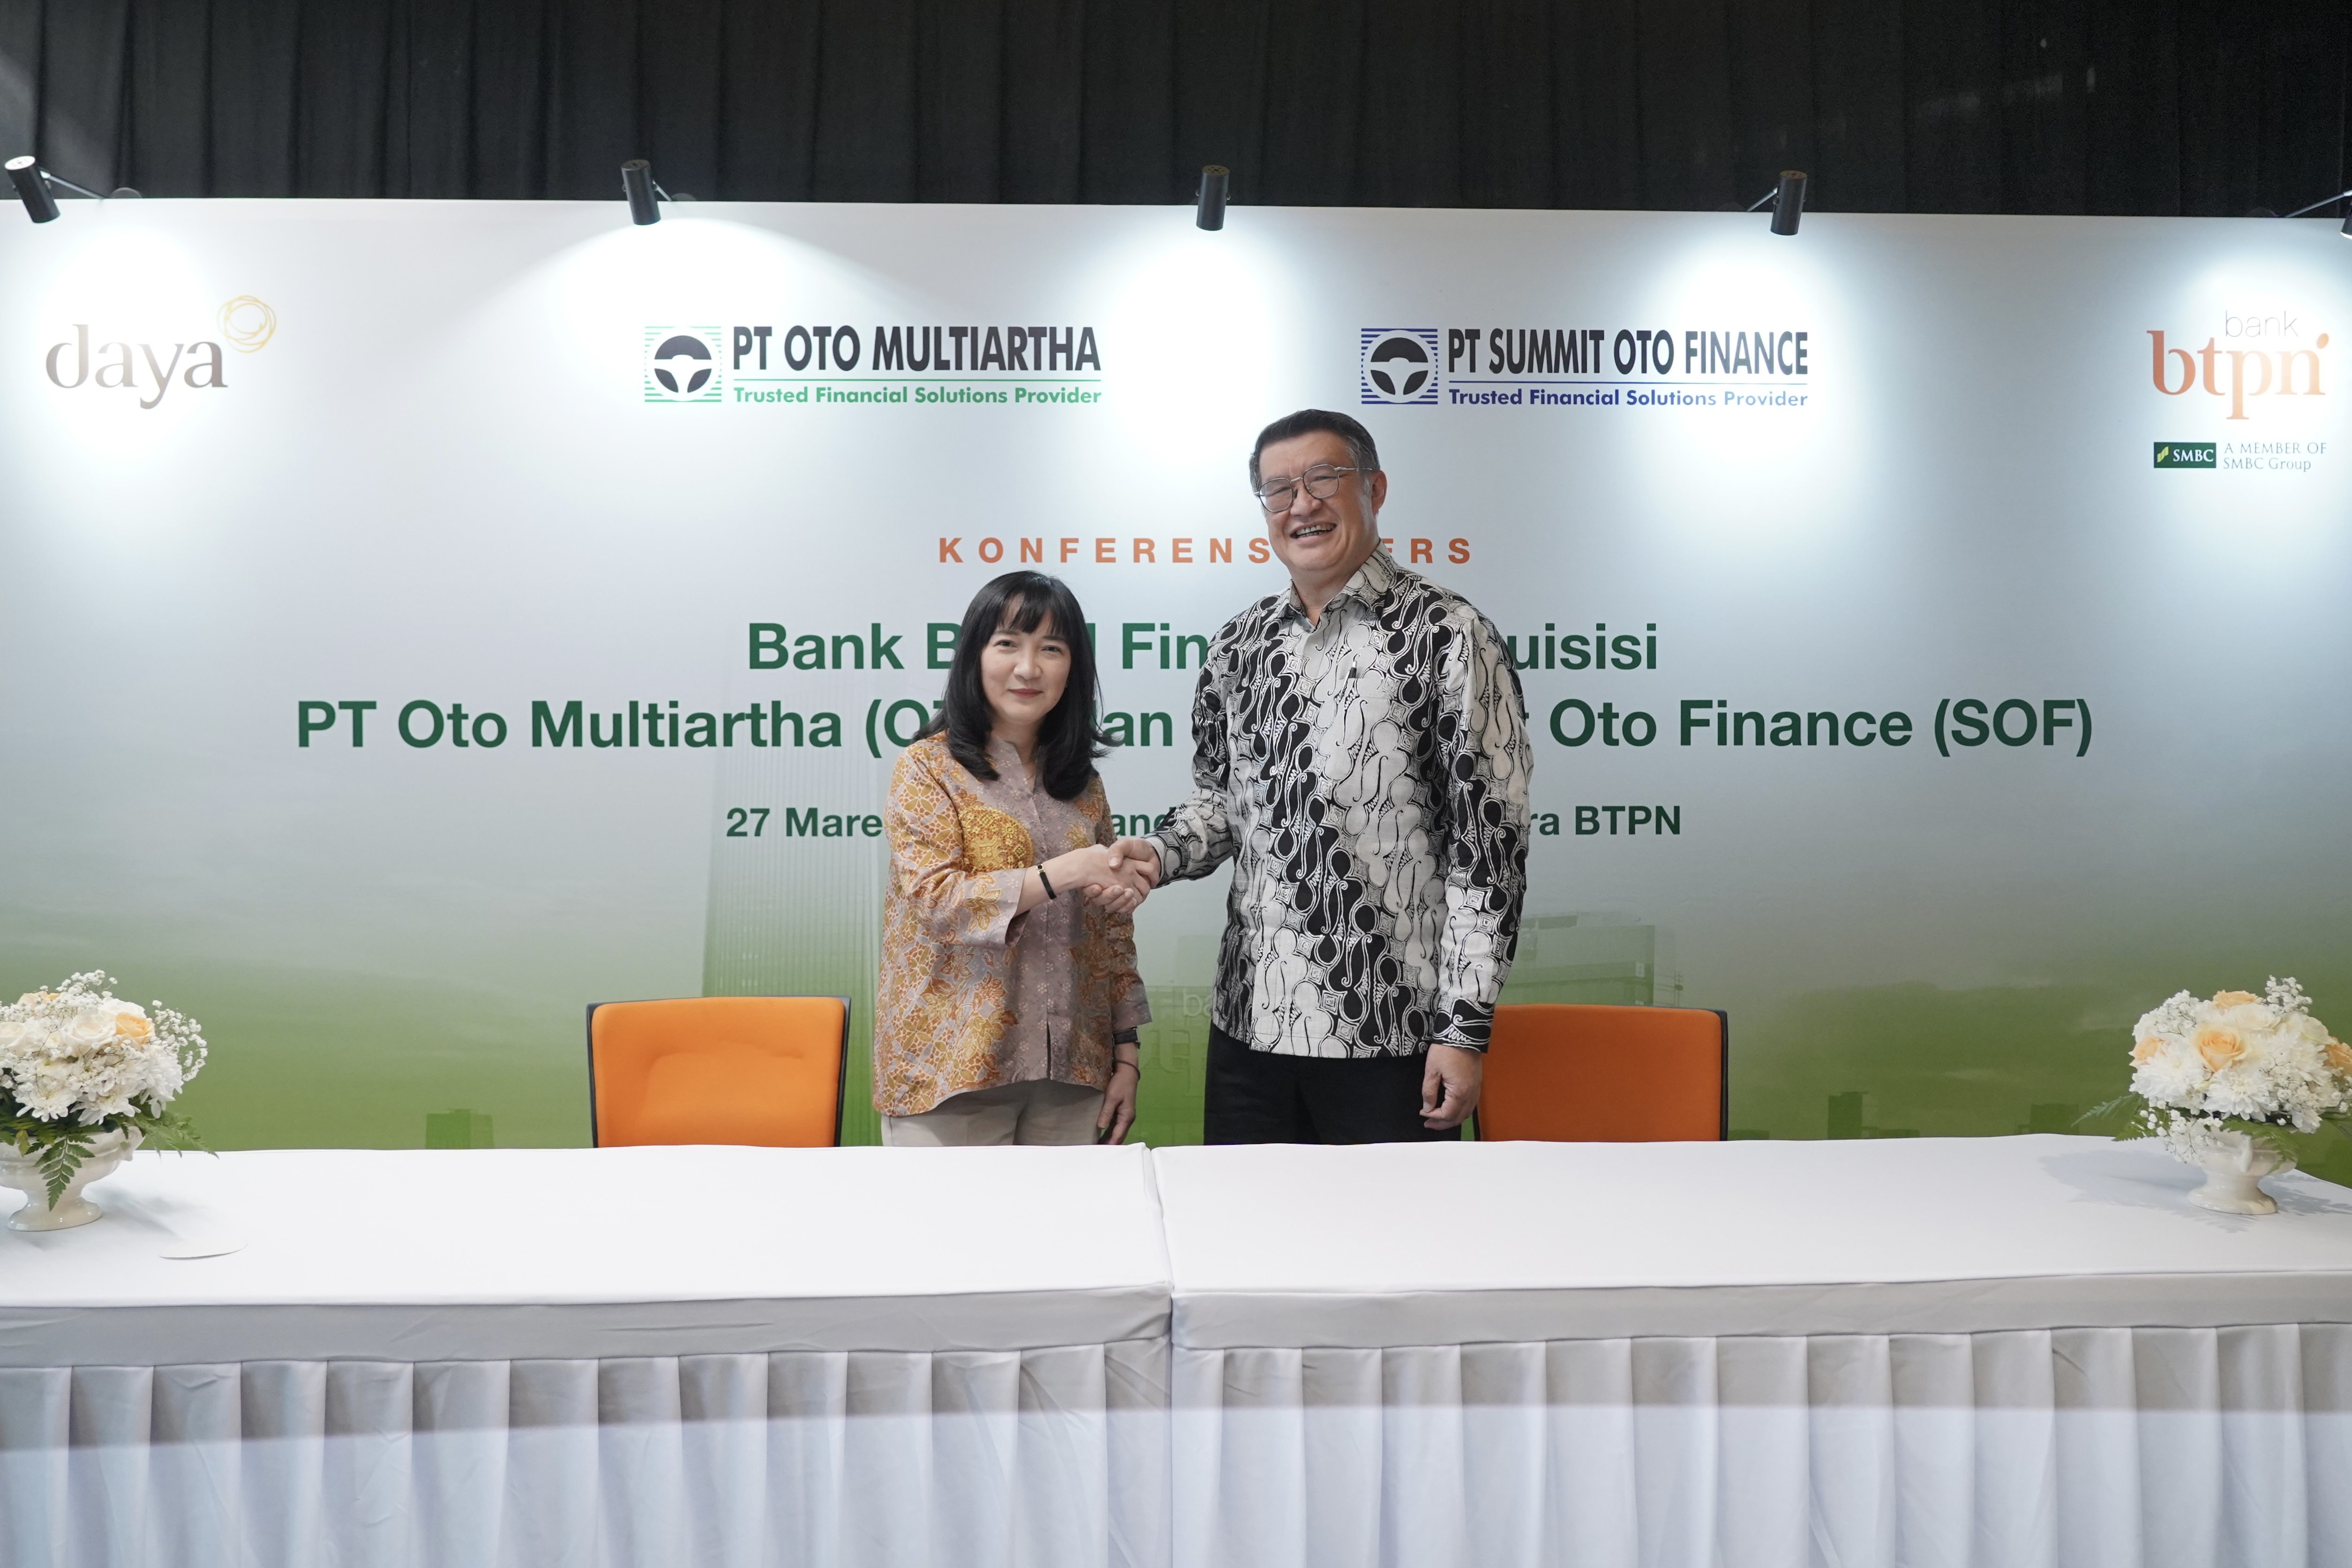 Bank BTPN Finalisasi Akuisisi terhadap PT Summit Oto Finance, Siap Layani Segmen Nasabah Lebih Luas